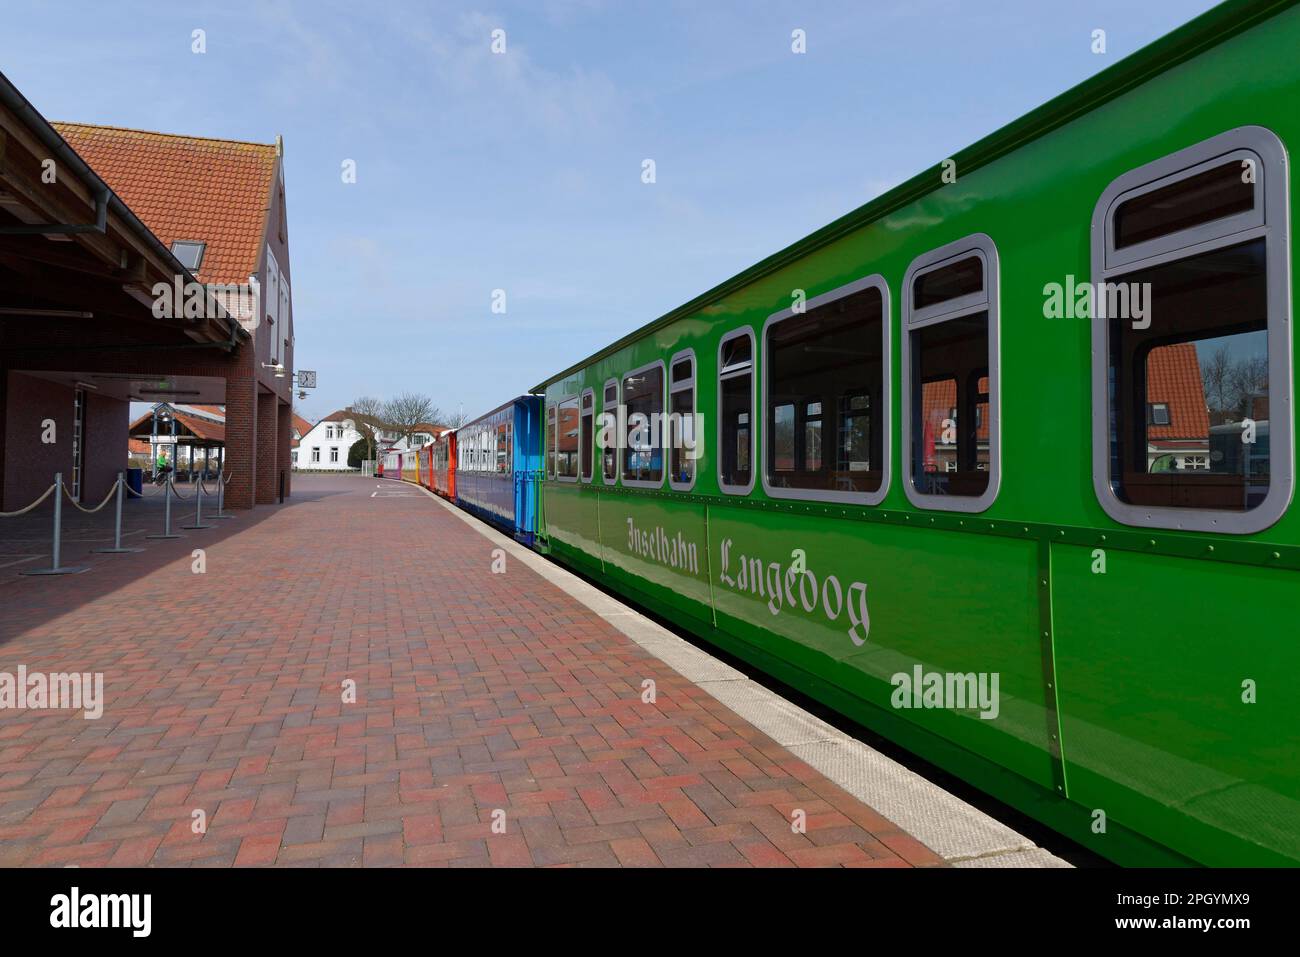 Inselbahn am Bahnhof Langeoog, Langeoog, Niedersachsen, Deutschland Stockfoto